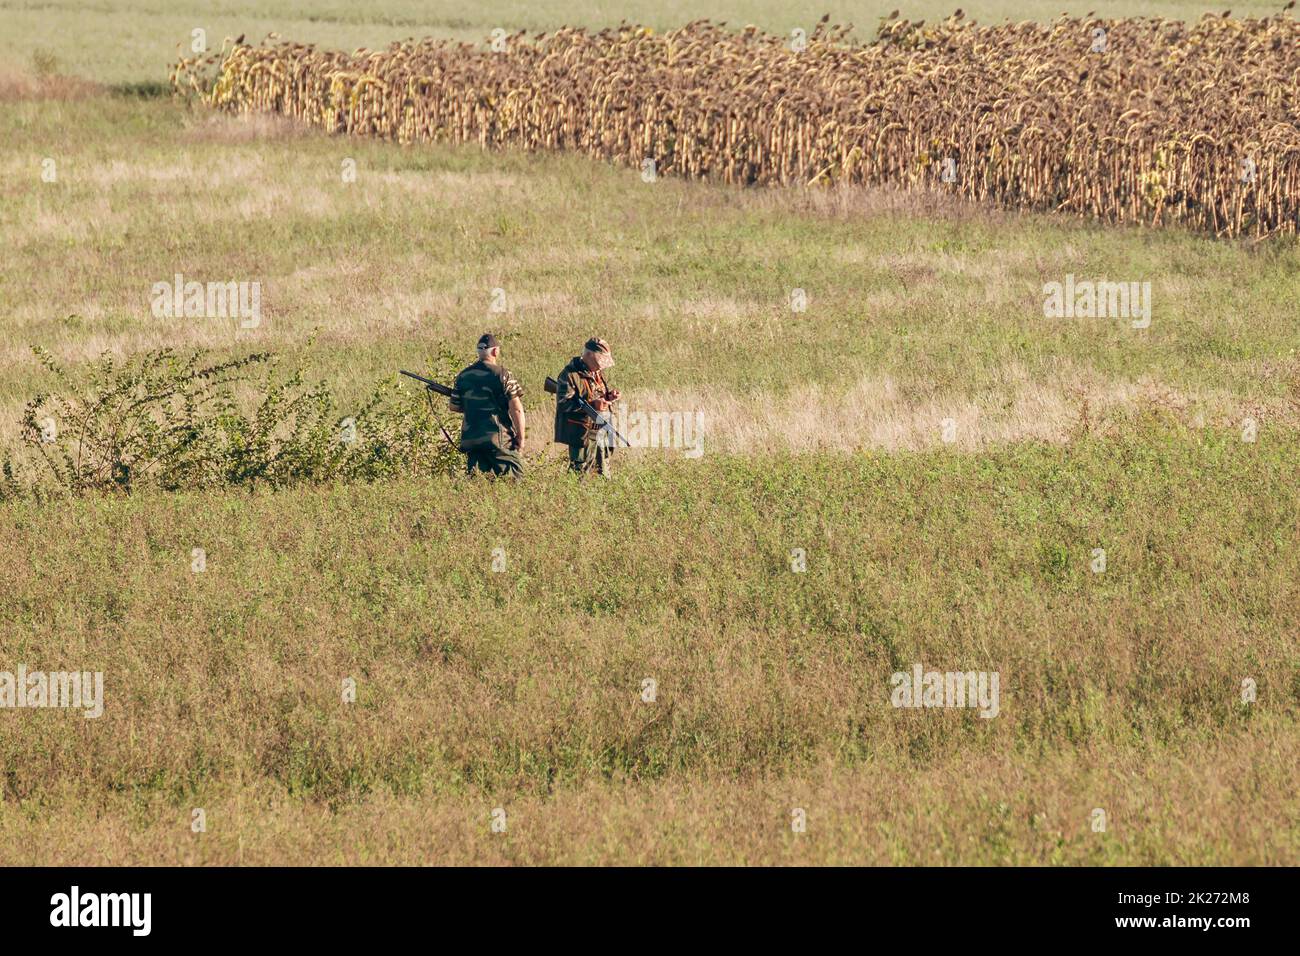 Dos cazadores armados con rifles esperan para disparar a sus presas en un campo con girasoles secos en el fondo Foto de stock